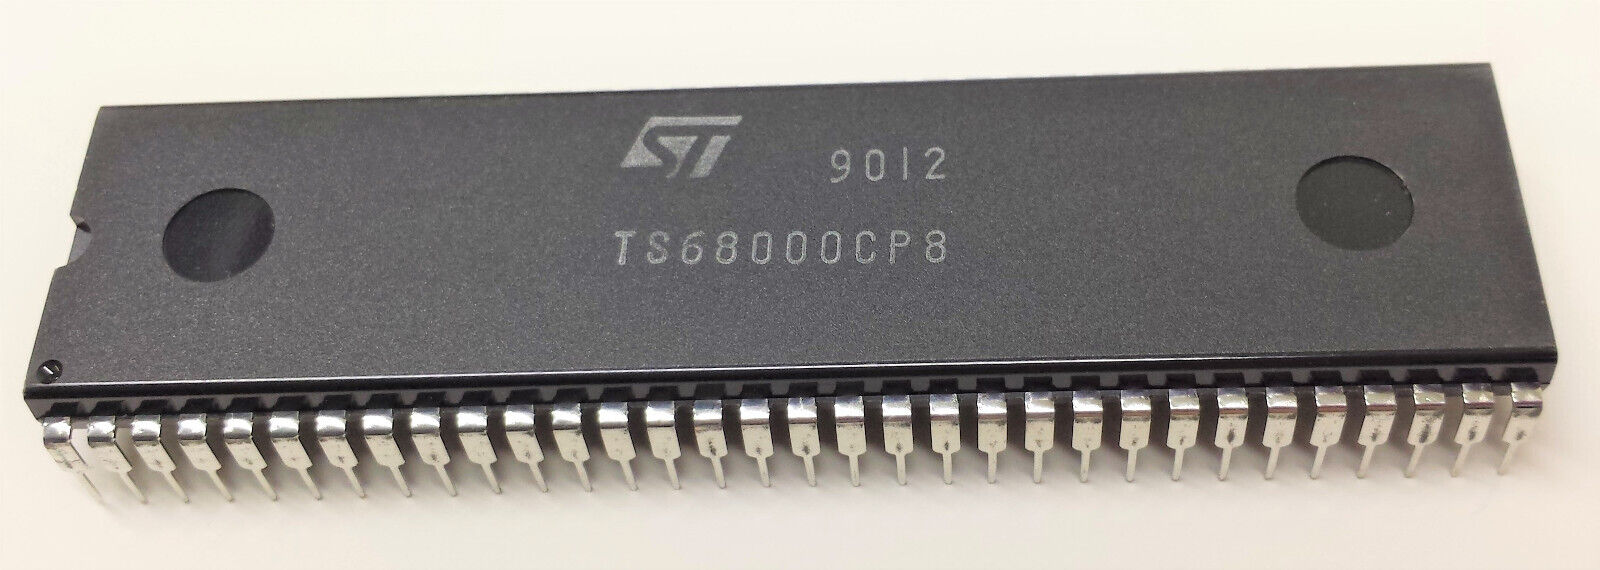 1pcs TS68000CP8 | 8MHz | DIP64 | 68000 | Atari Commodore AMIGA 500 A2000 CDTV